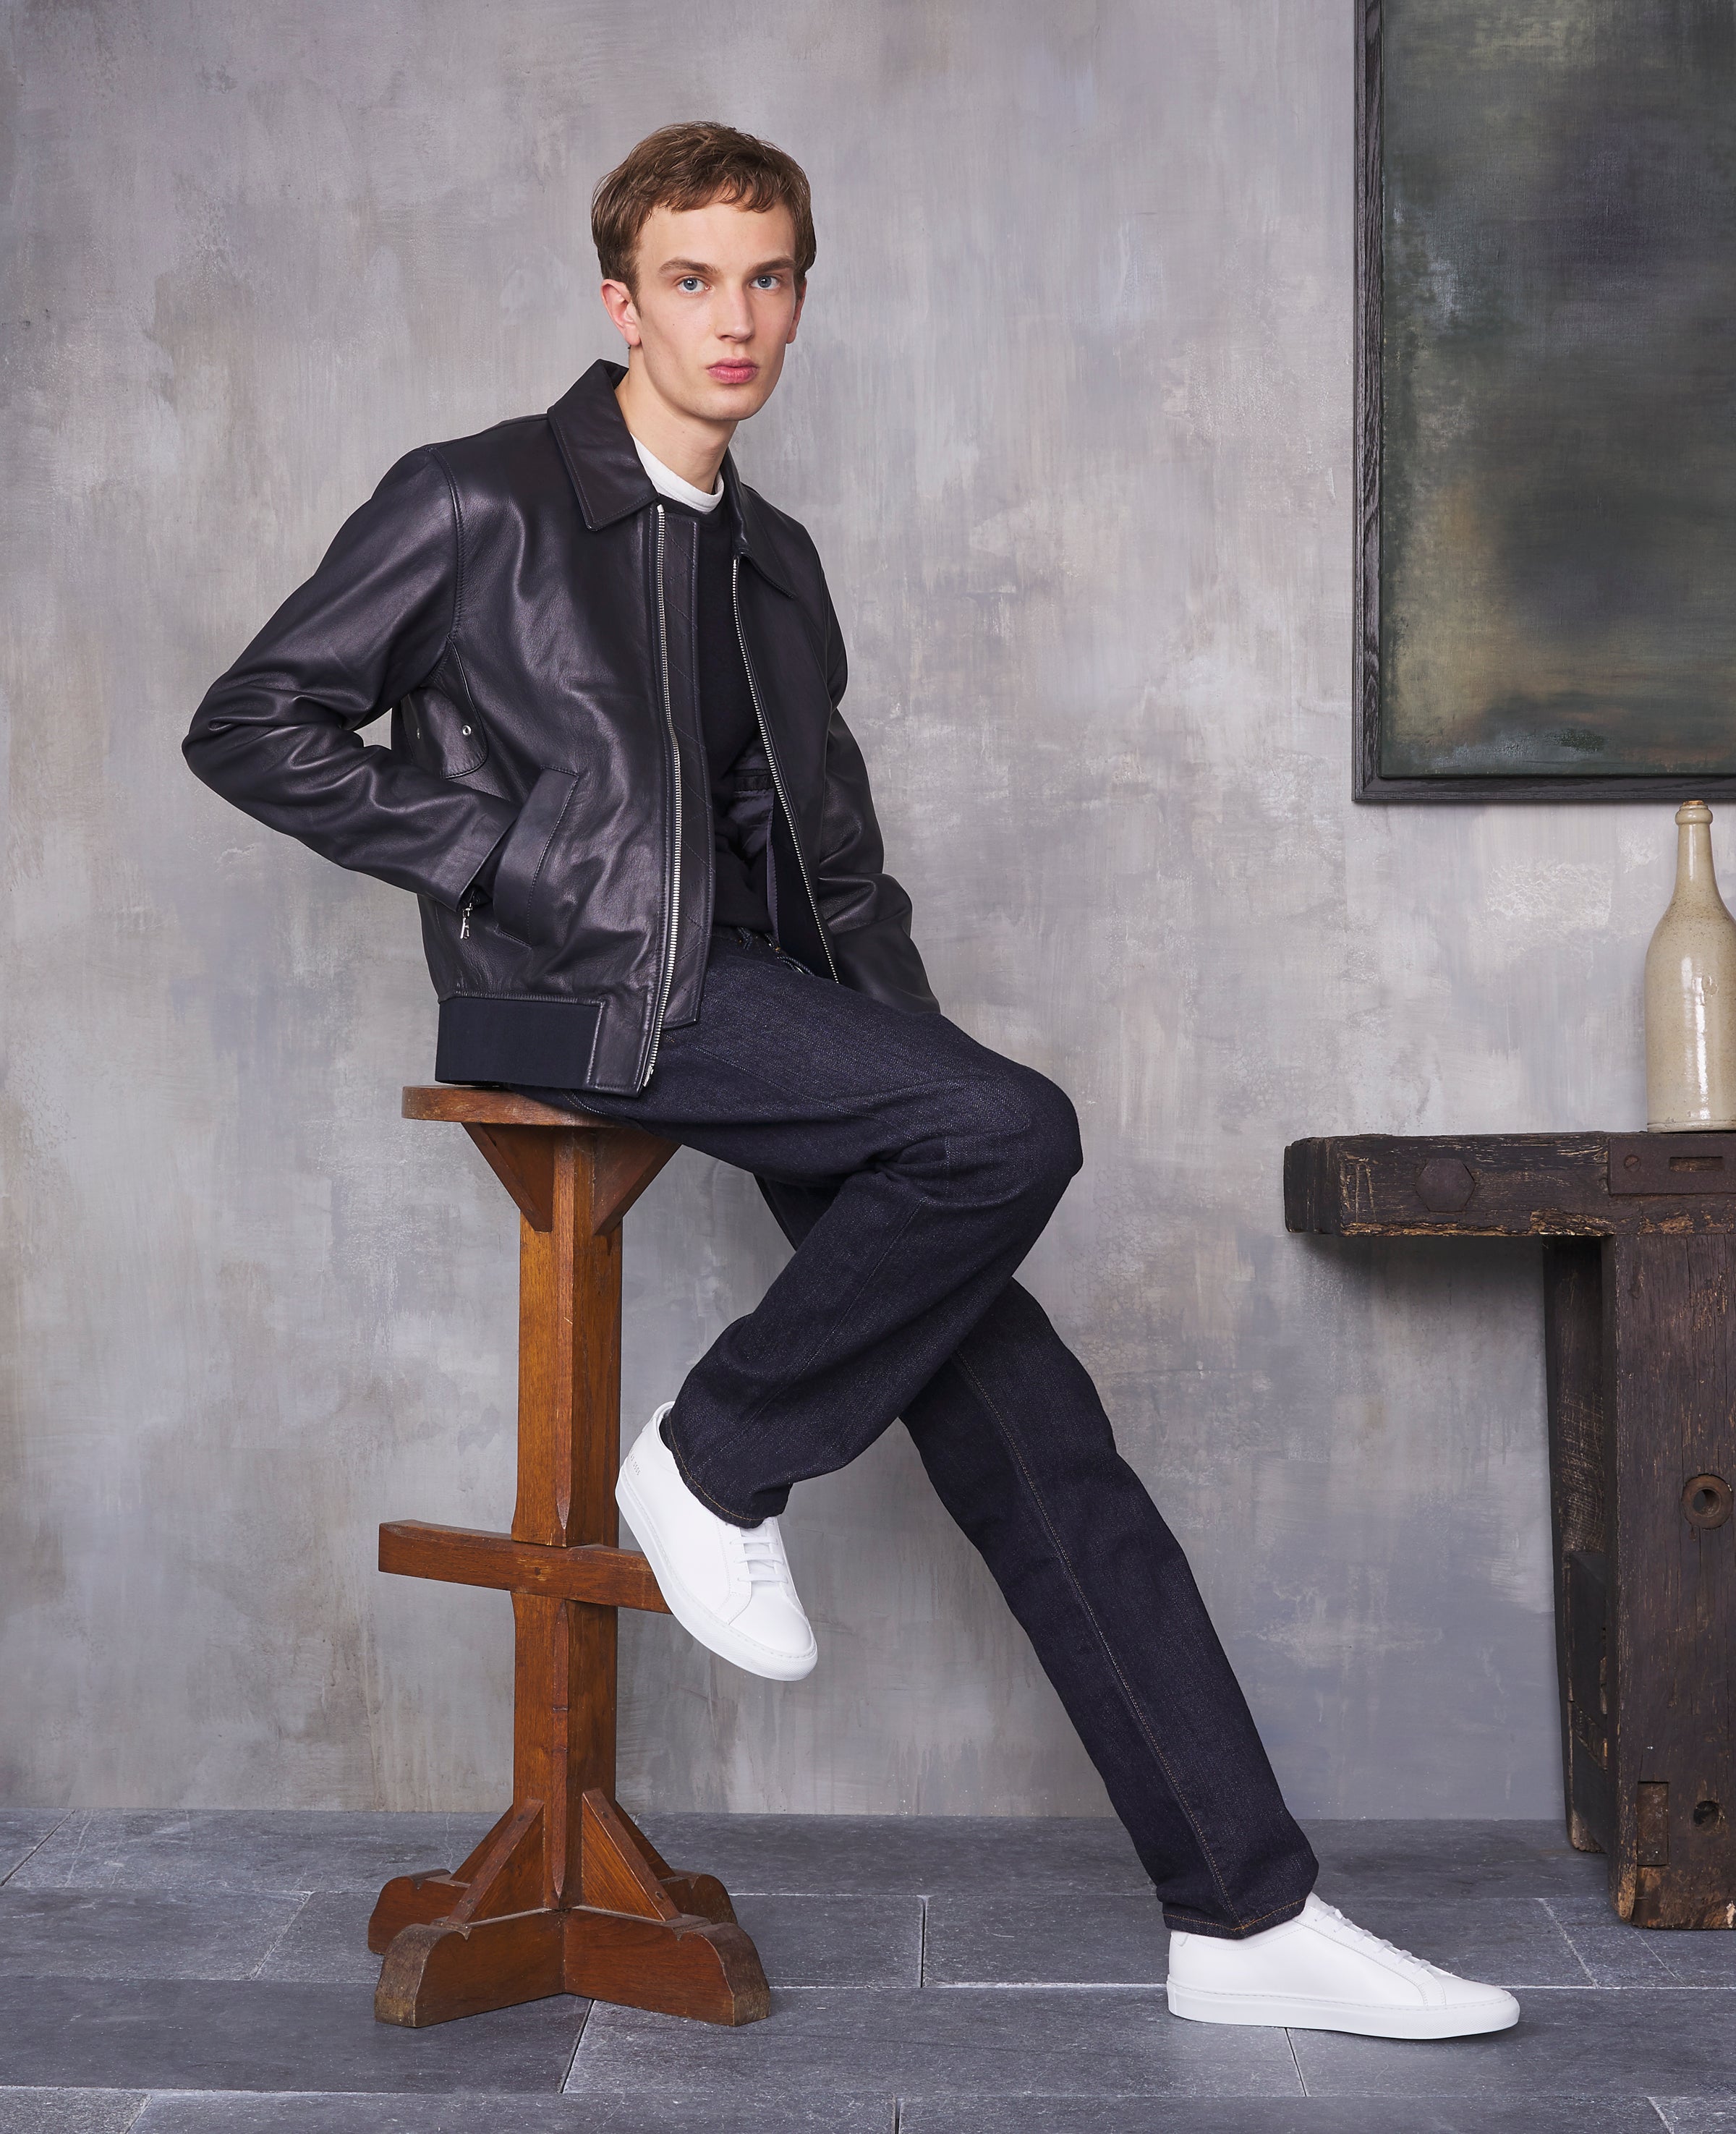 OG - Homme | Leather jackets – Officine Générale